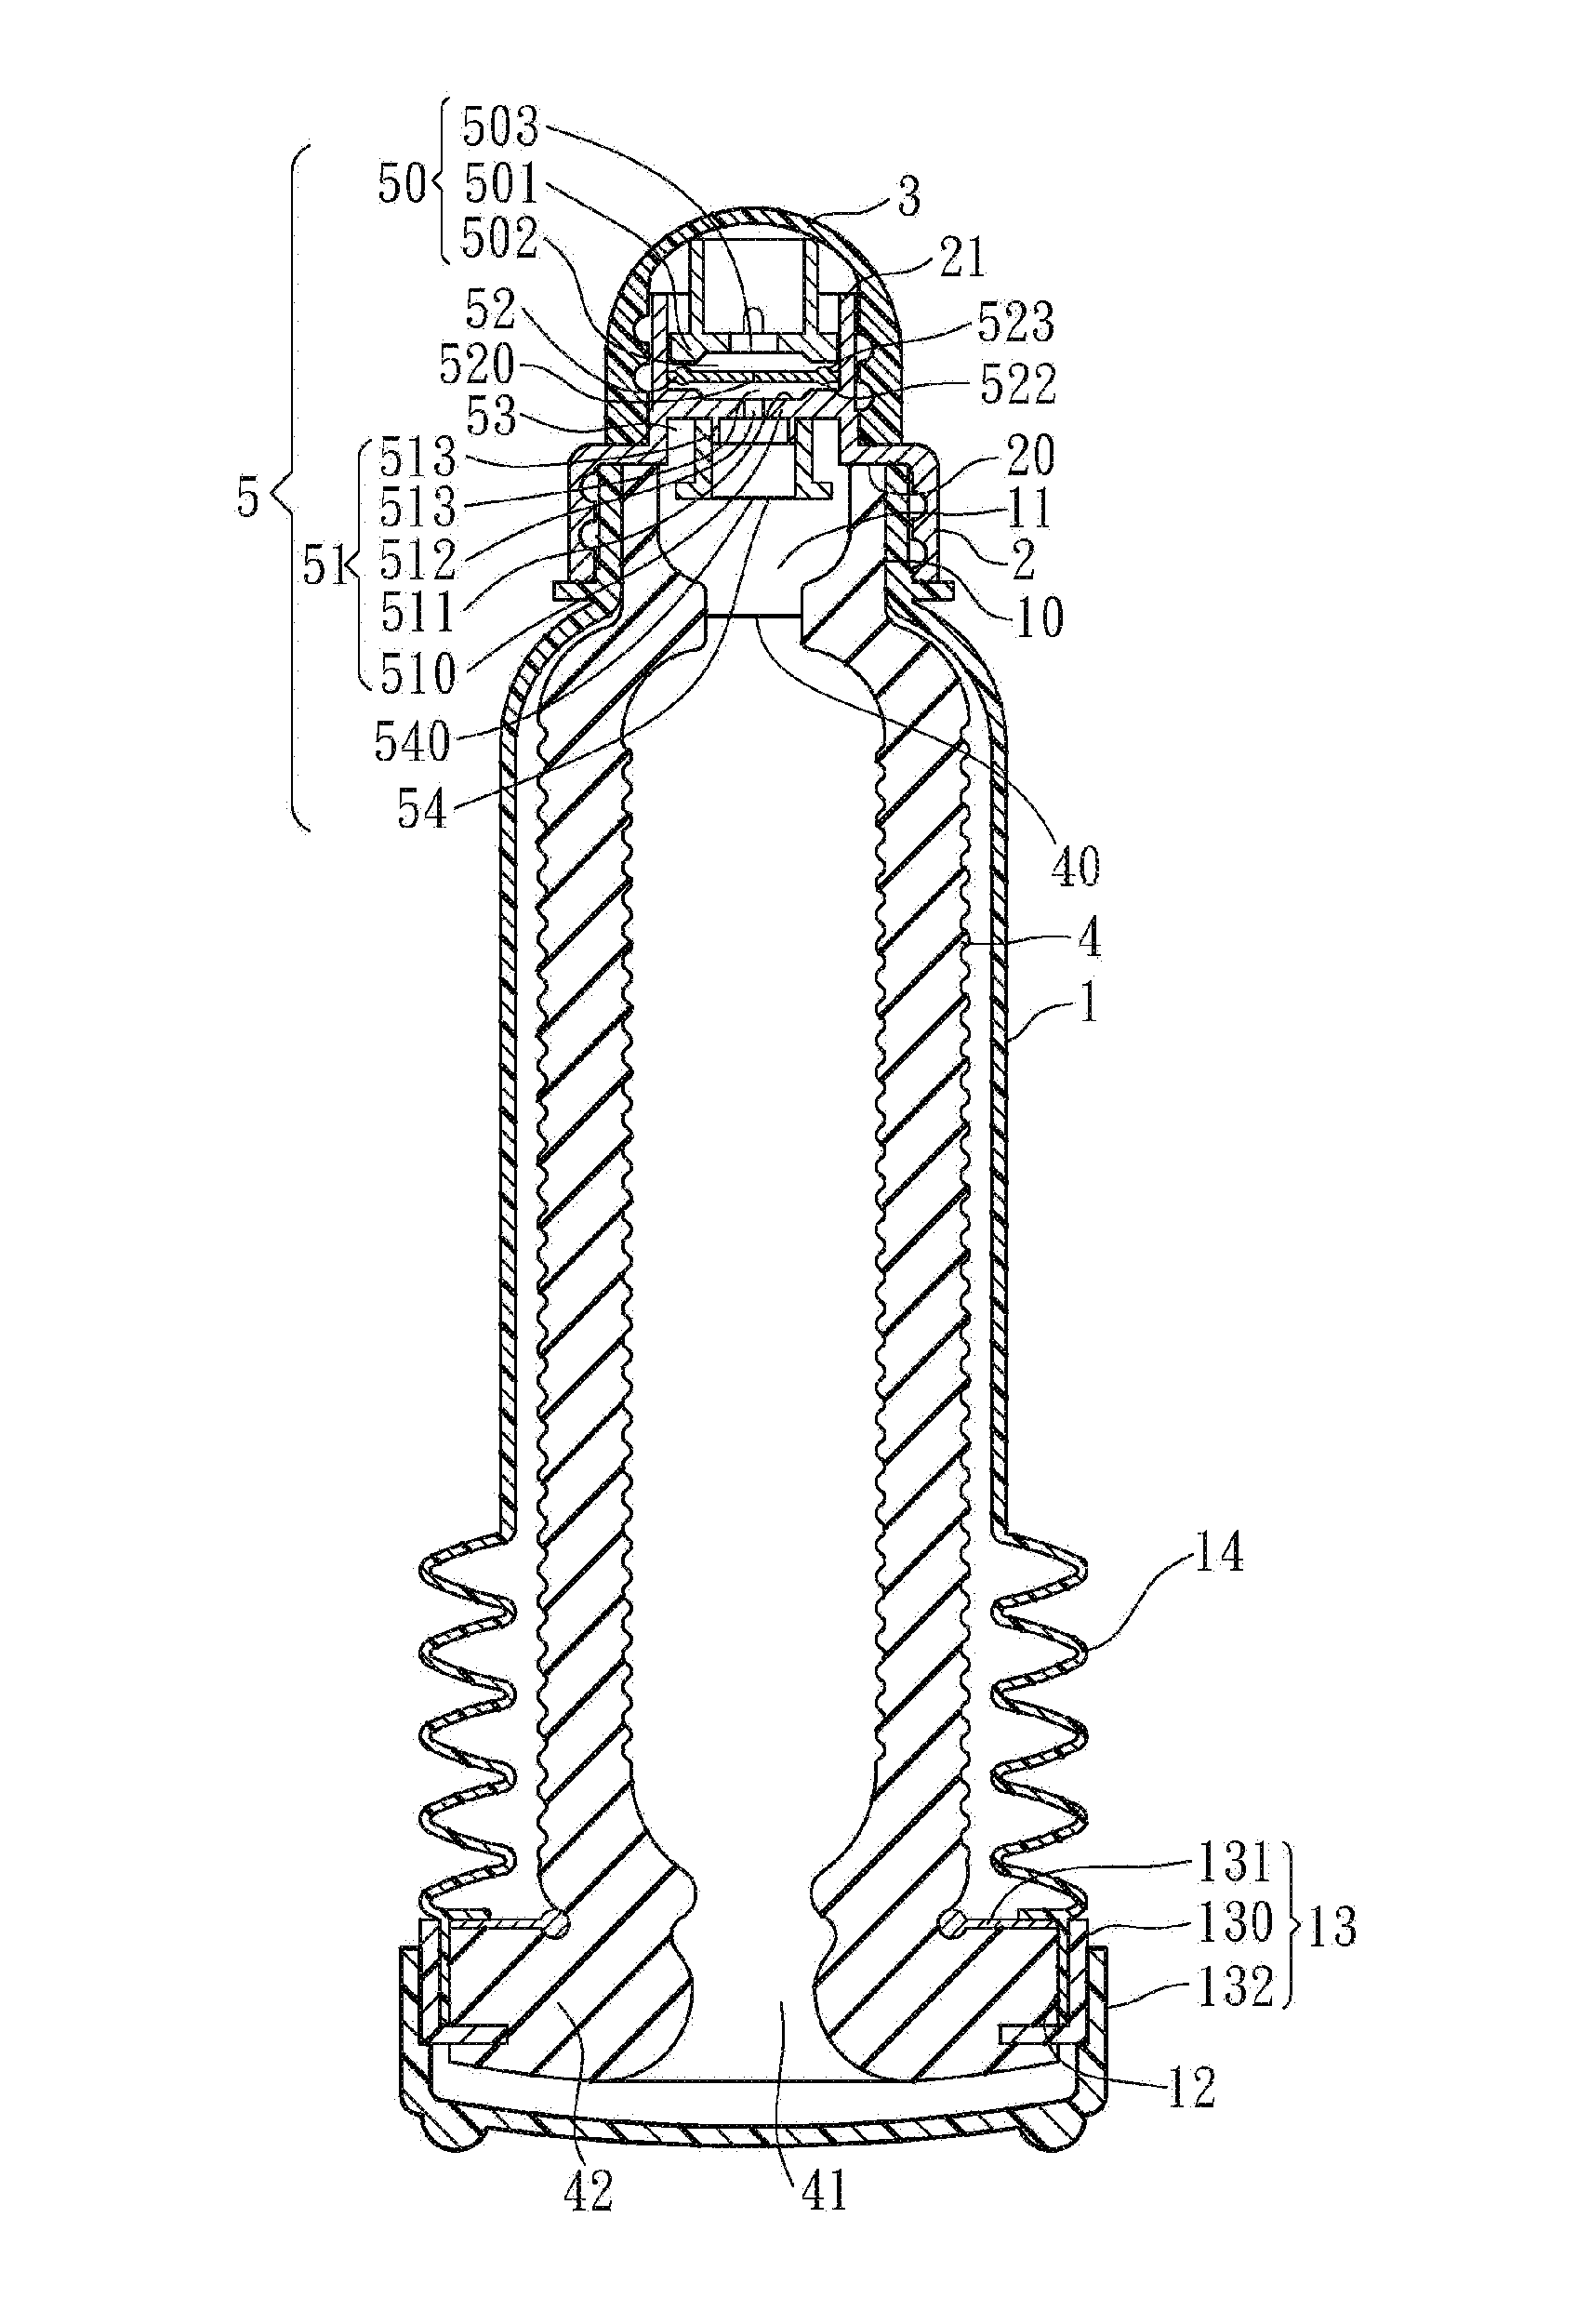 Vacuum suction apparatus